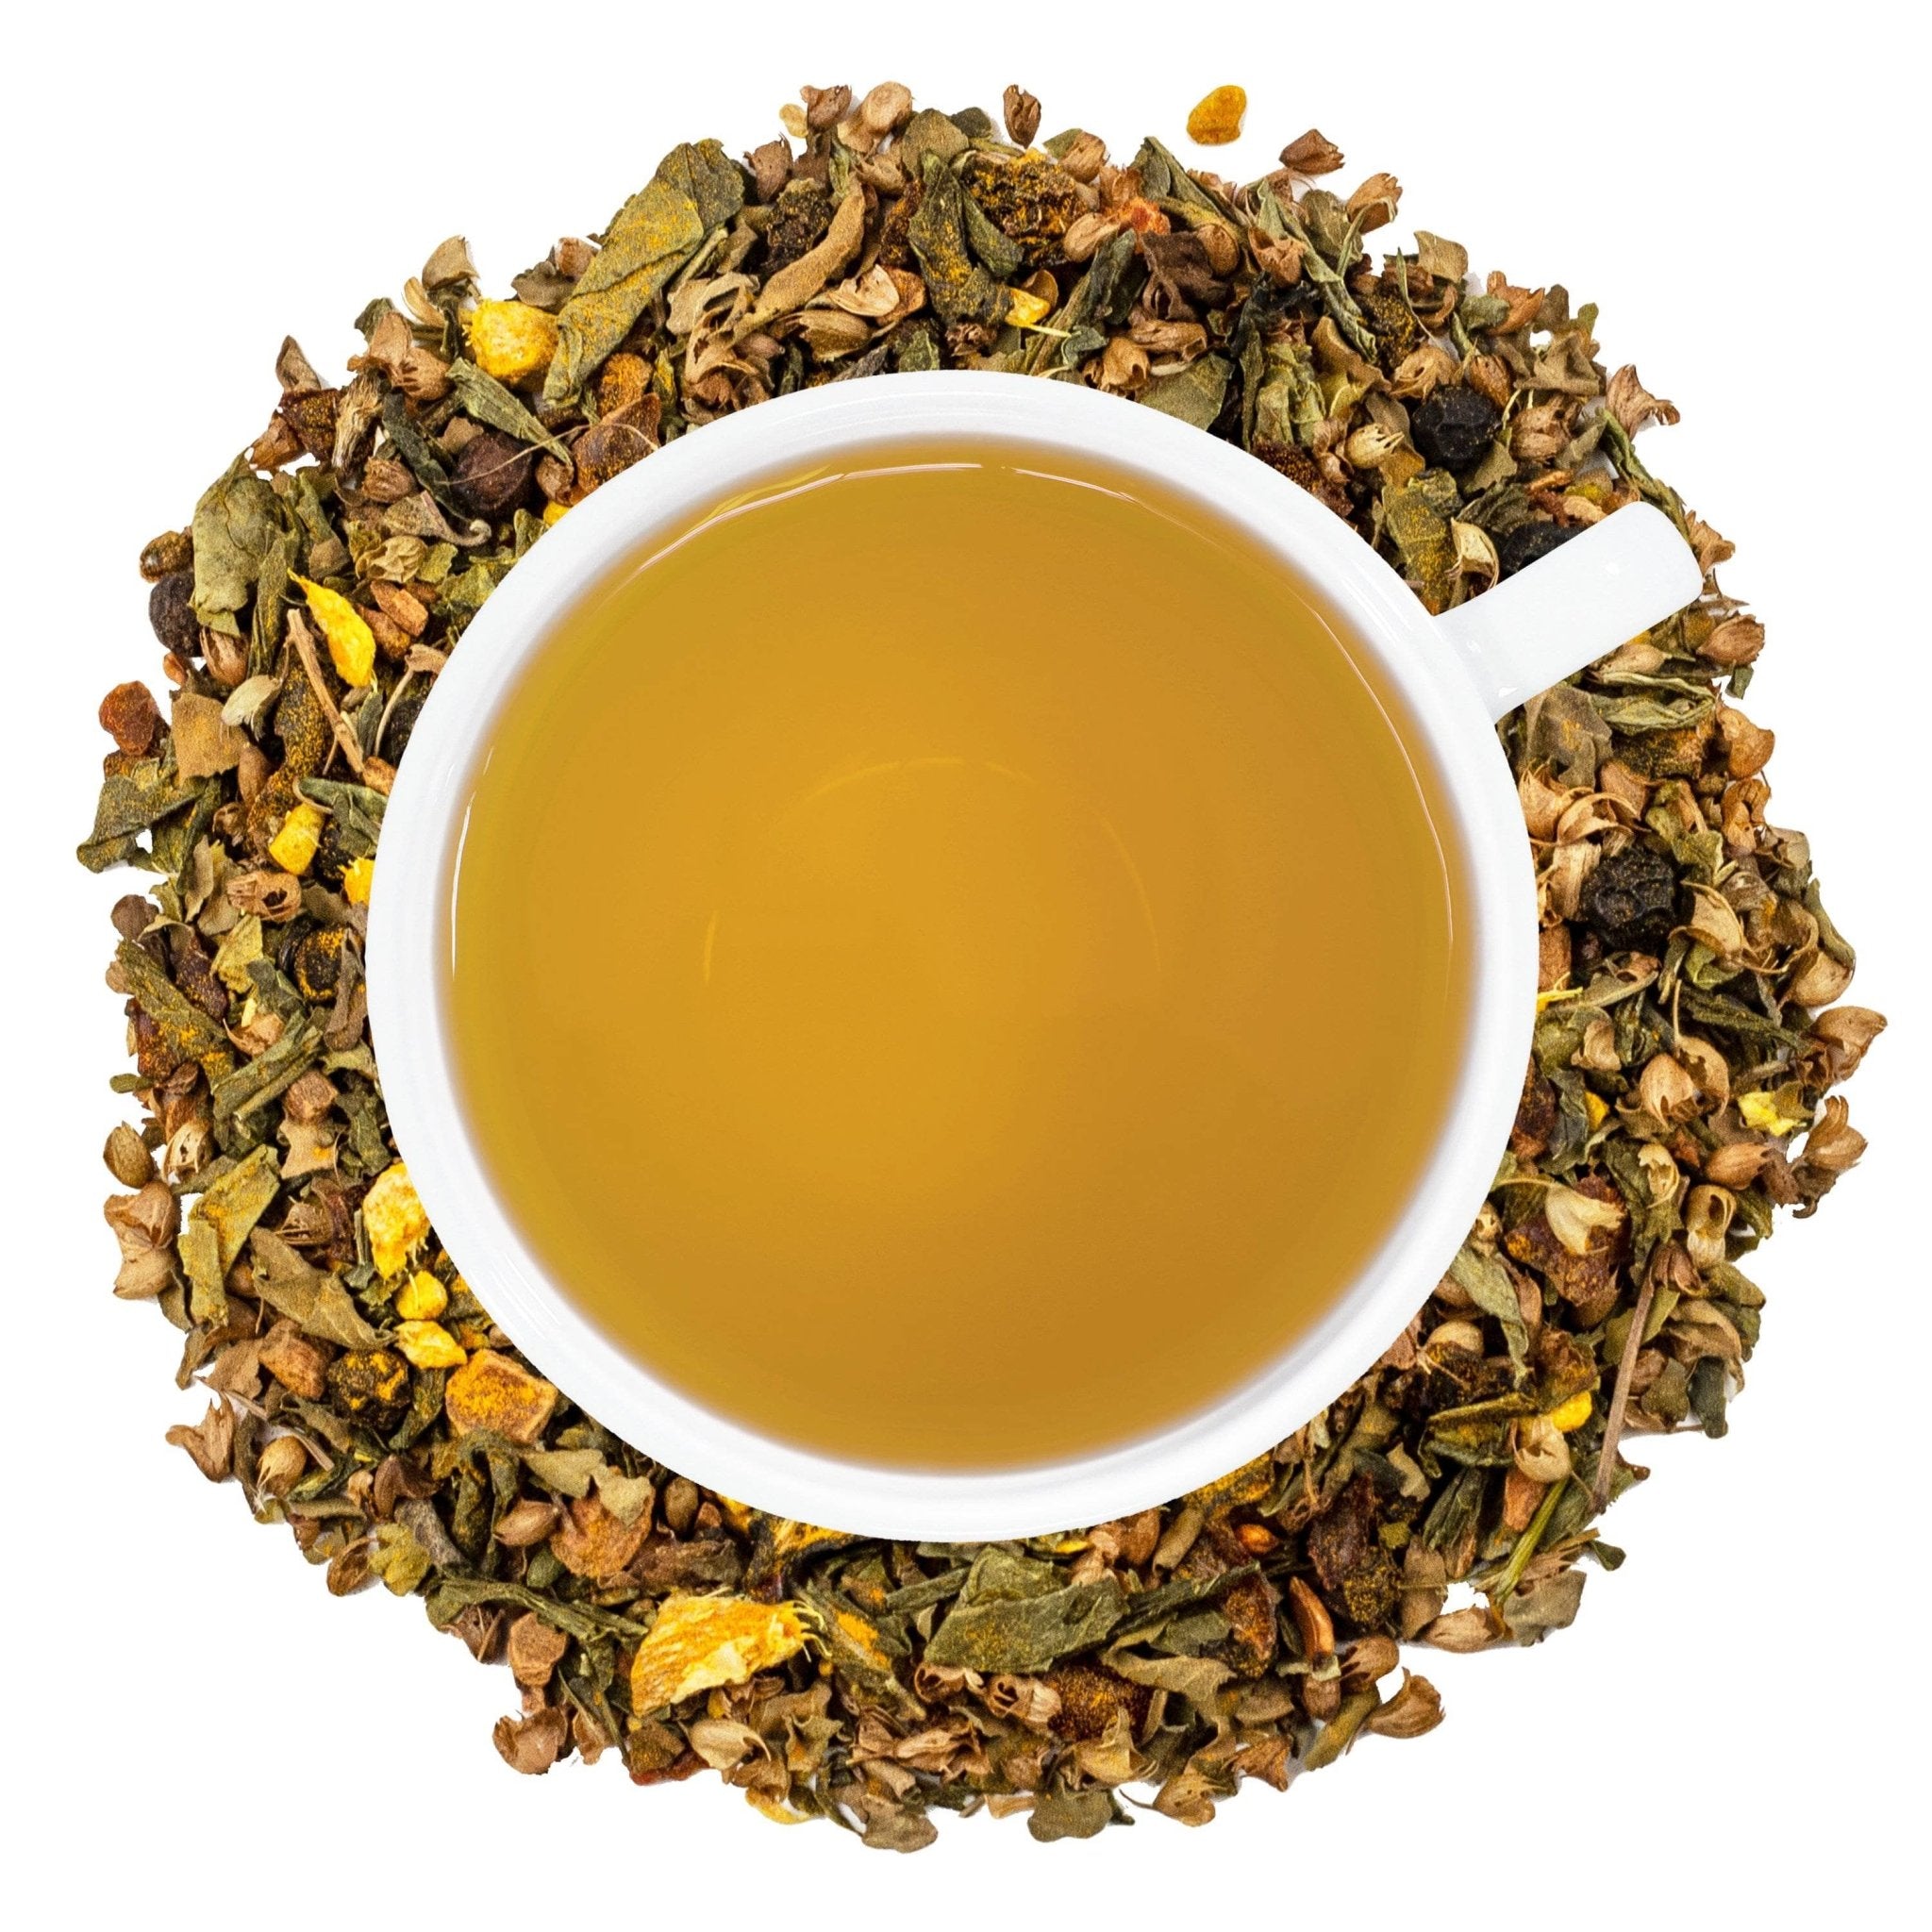 Art of Tea: Organic Loose Leaf Teas, Tea Bags & Tea Gift